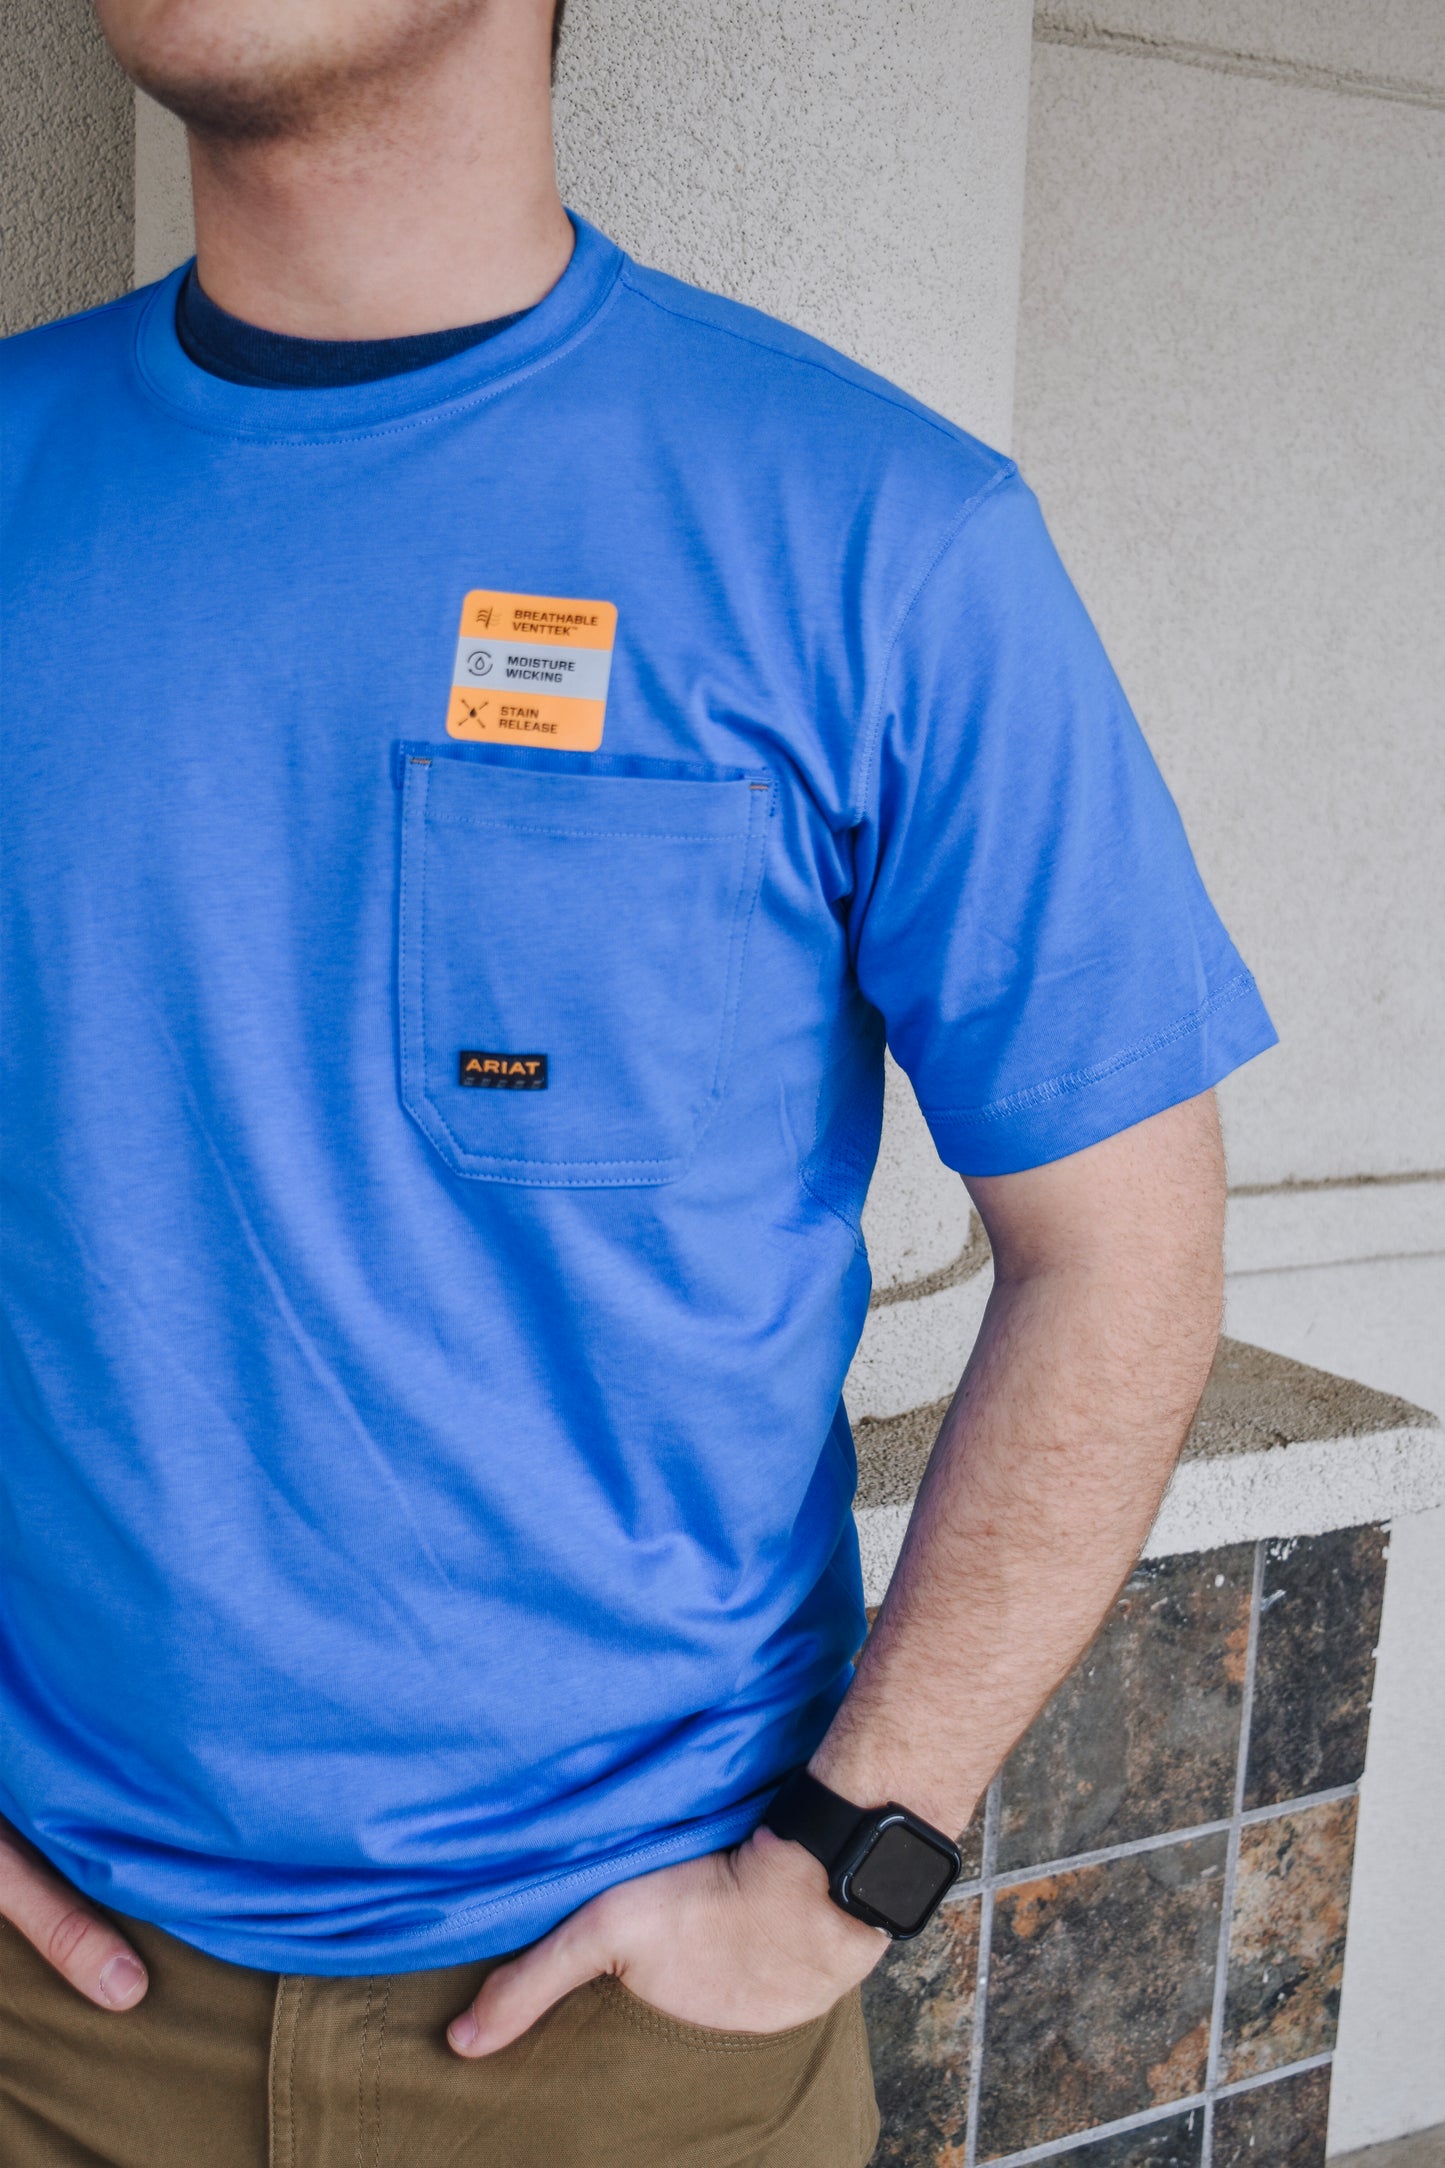 Ariat Rebar Workman Logo Shirt -  Campanula Grey Camo Blue